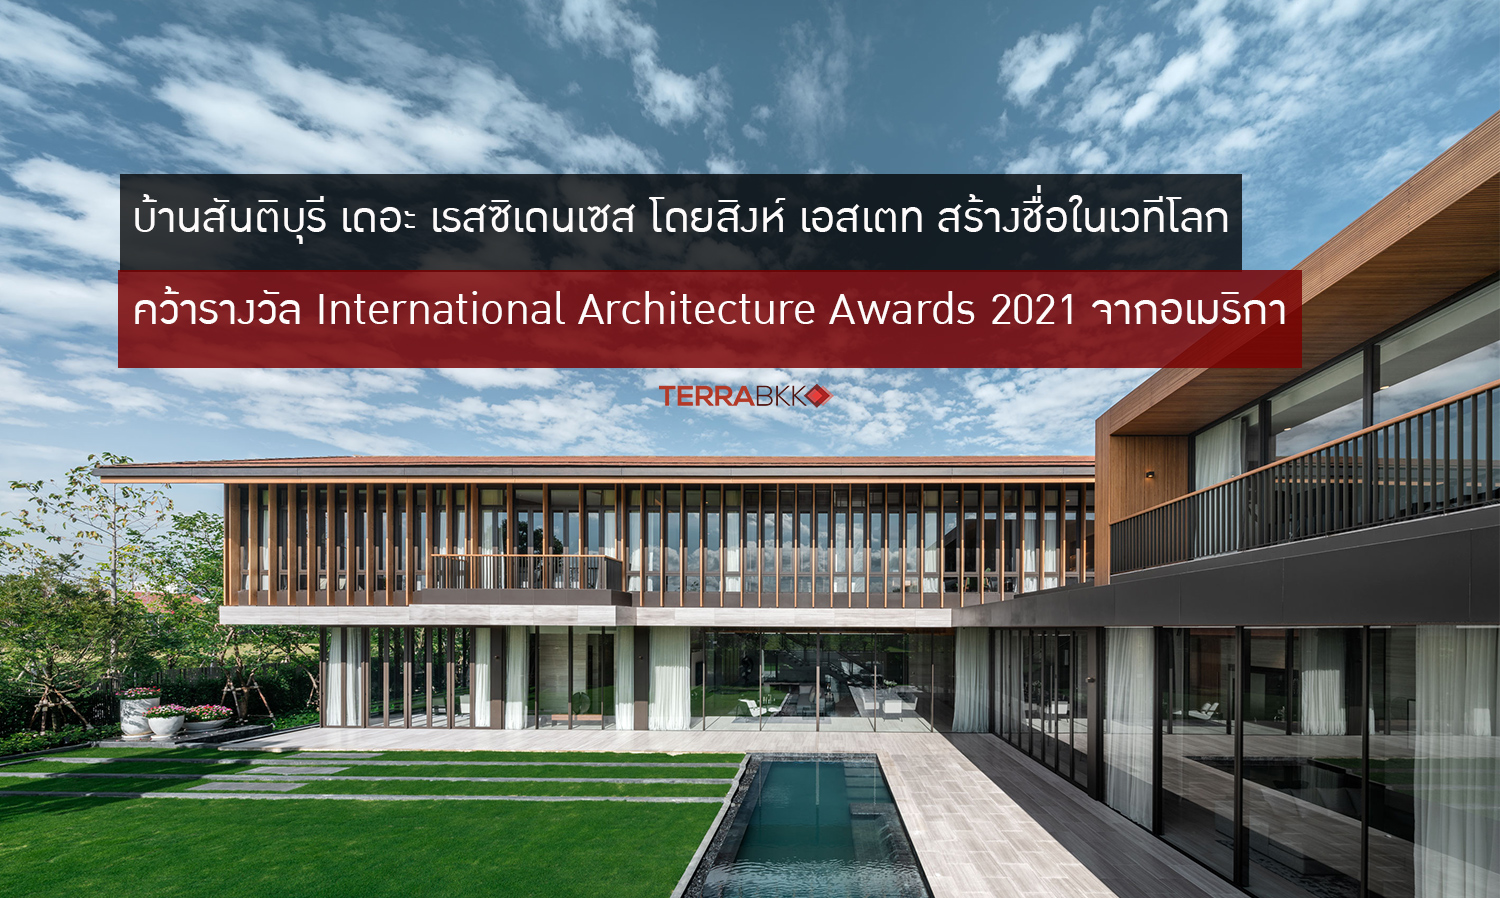 บ้านสันติบุรี เดอะ เรสซิเดนเซส โดยสิงห์ เอสเตท สร้างชื่อในเวทีโลก คว้ารางวัล International Architecture Awards 2021 จากอเมริกา